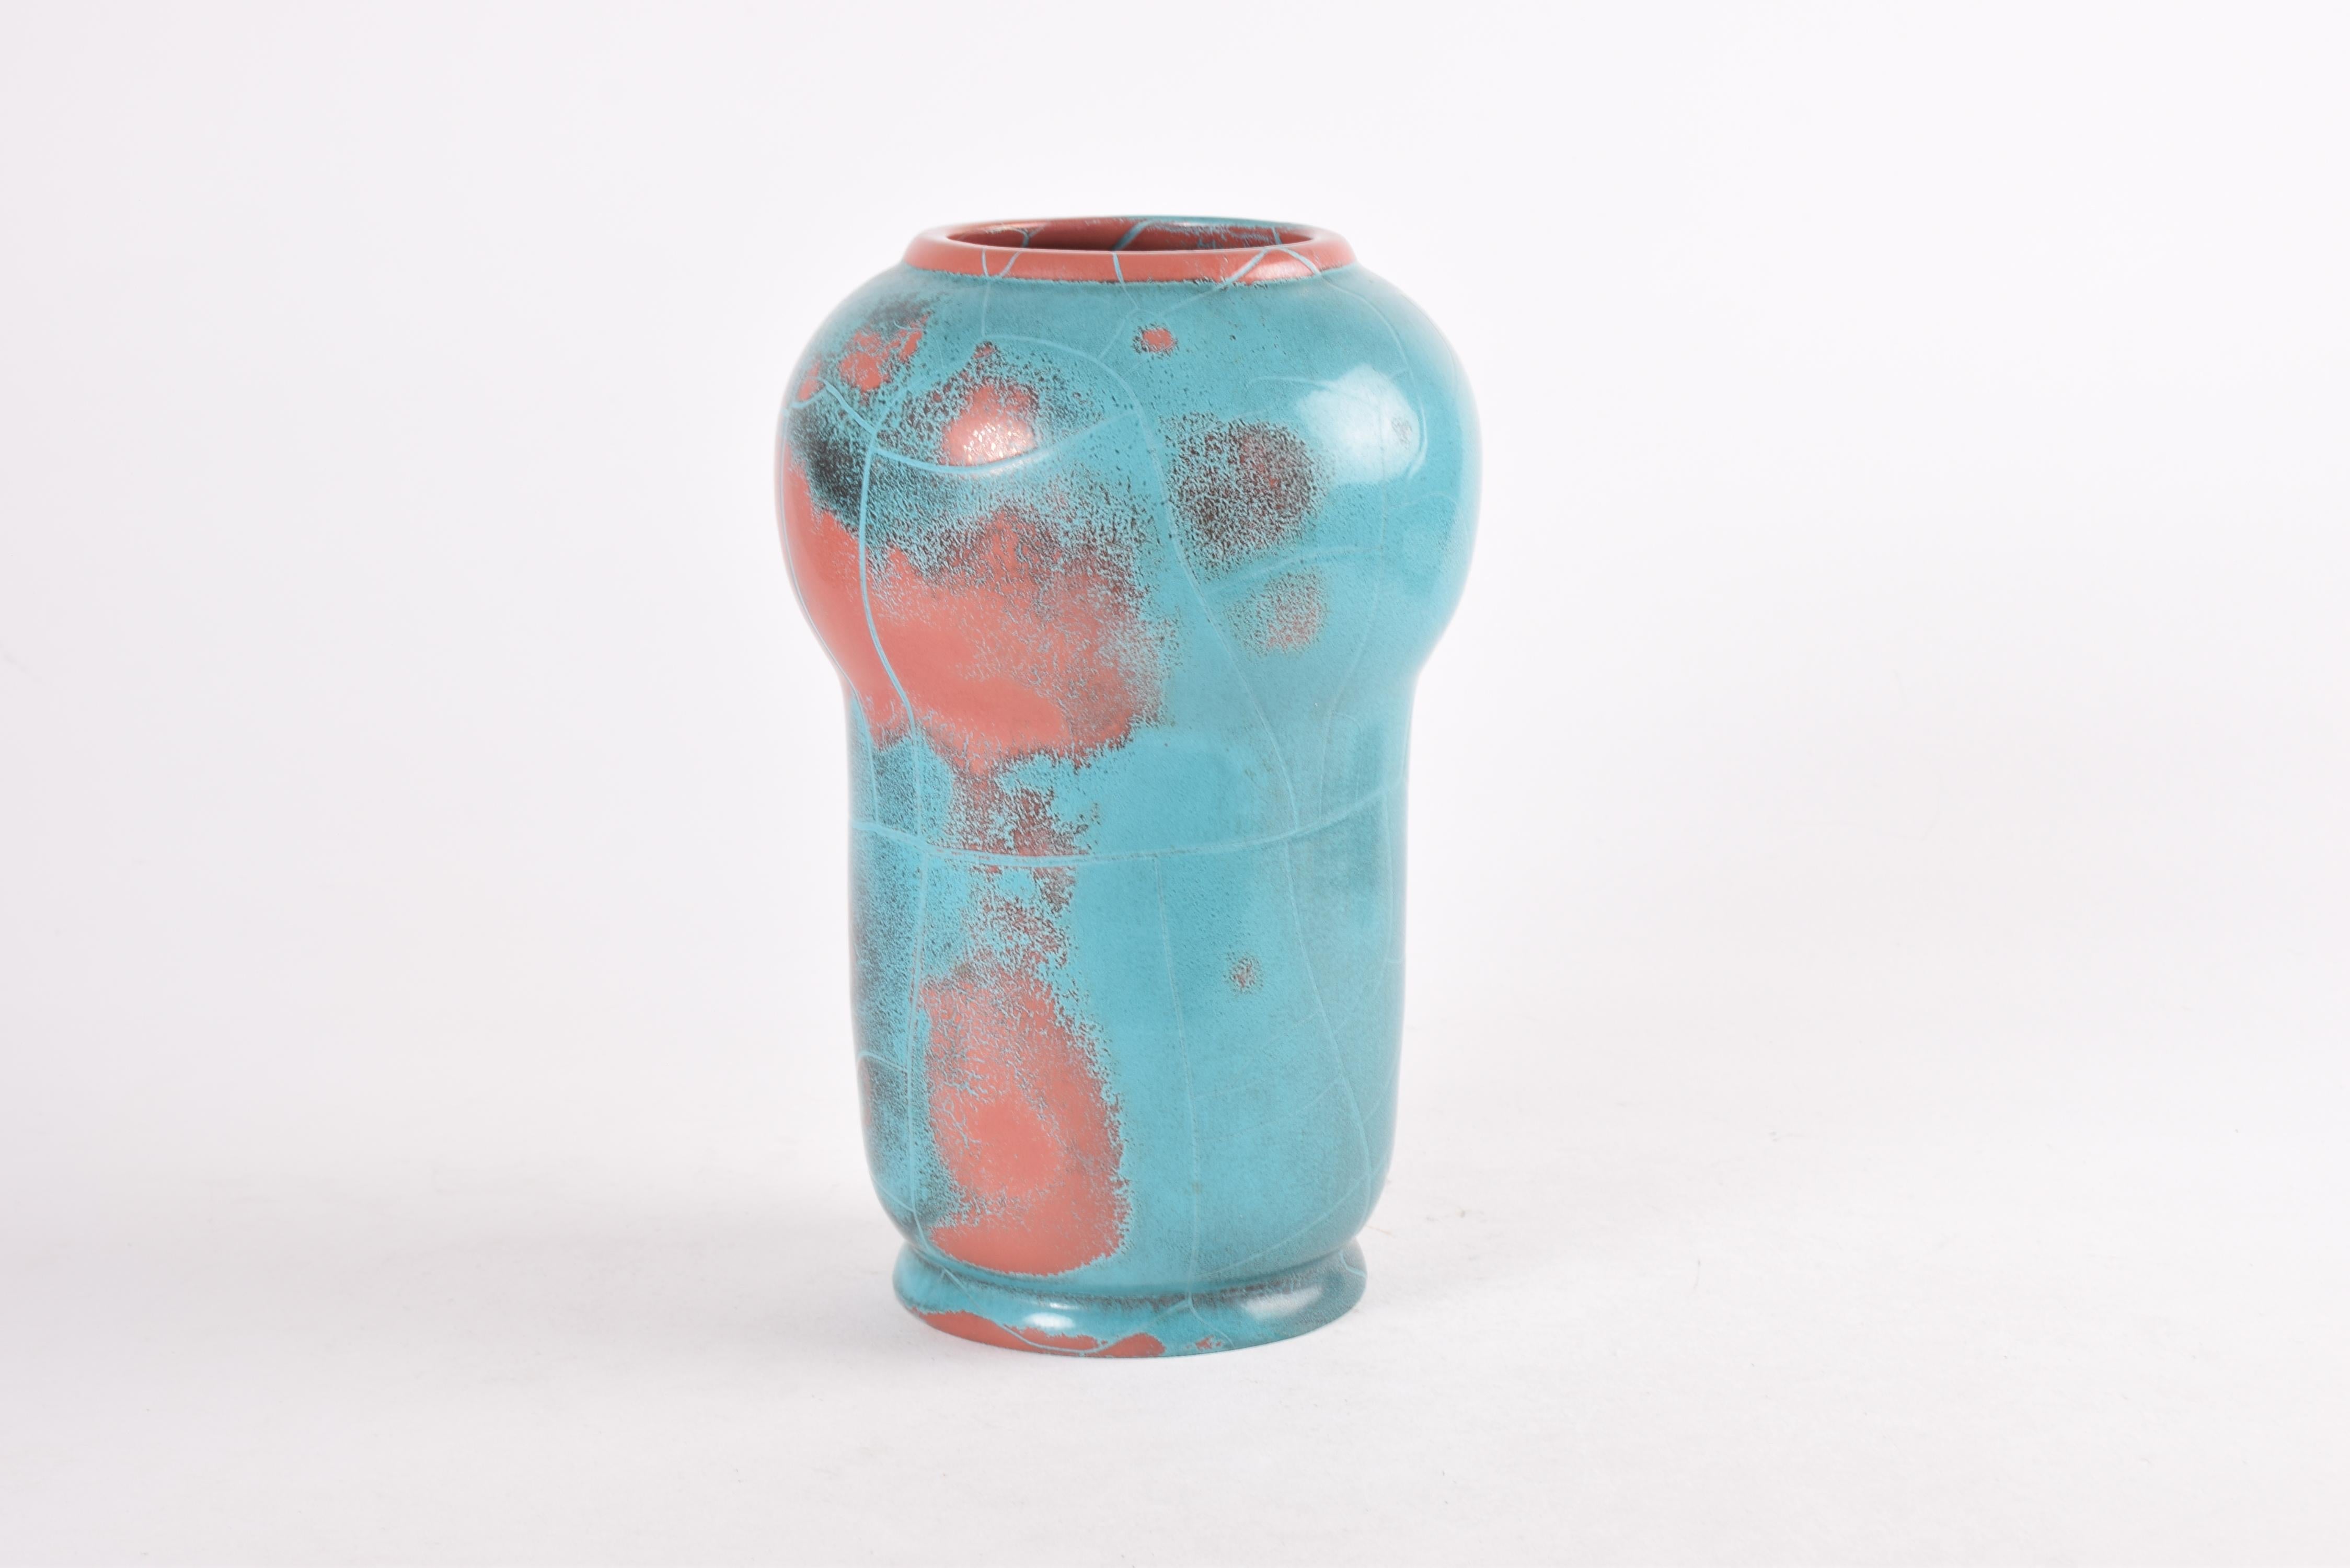 Scandinave moderne Rare grand vase danois P. Ipsens Enke glaçure rouge turquoise 